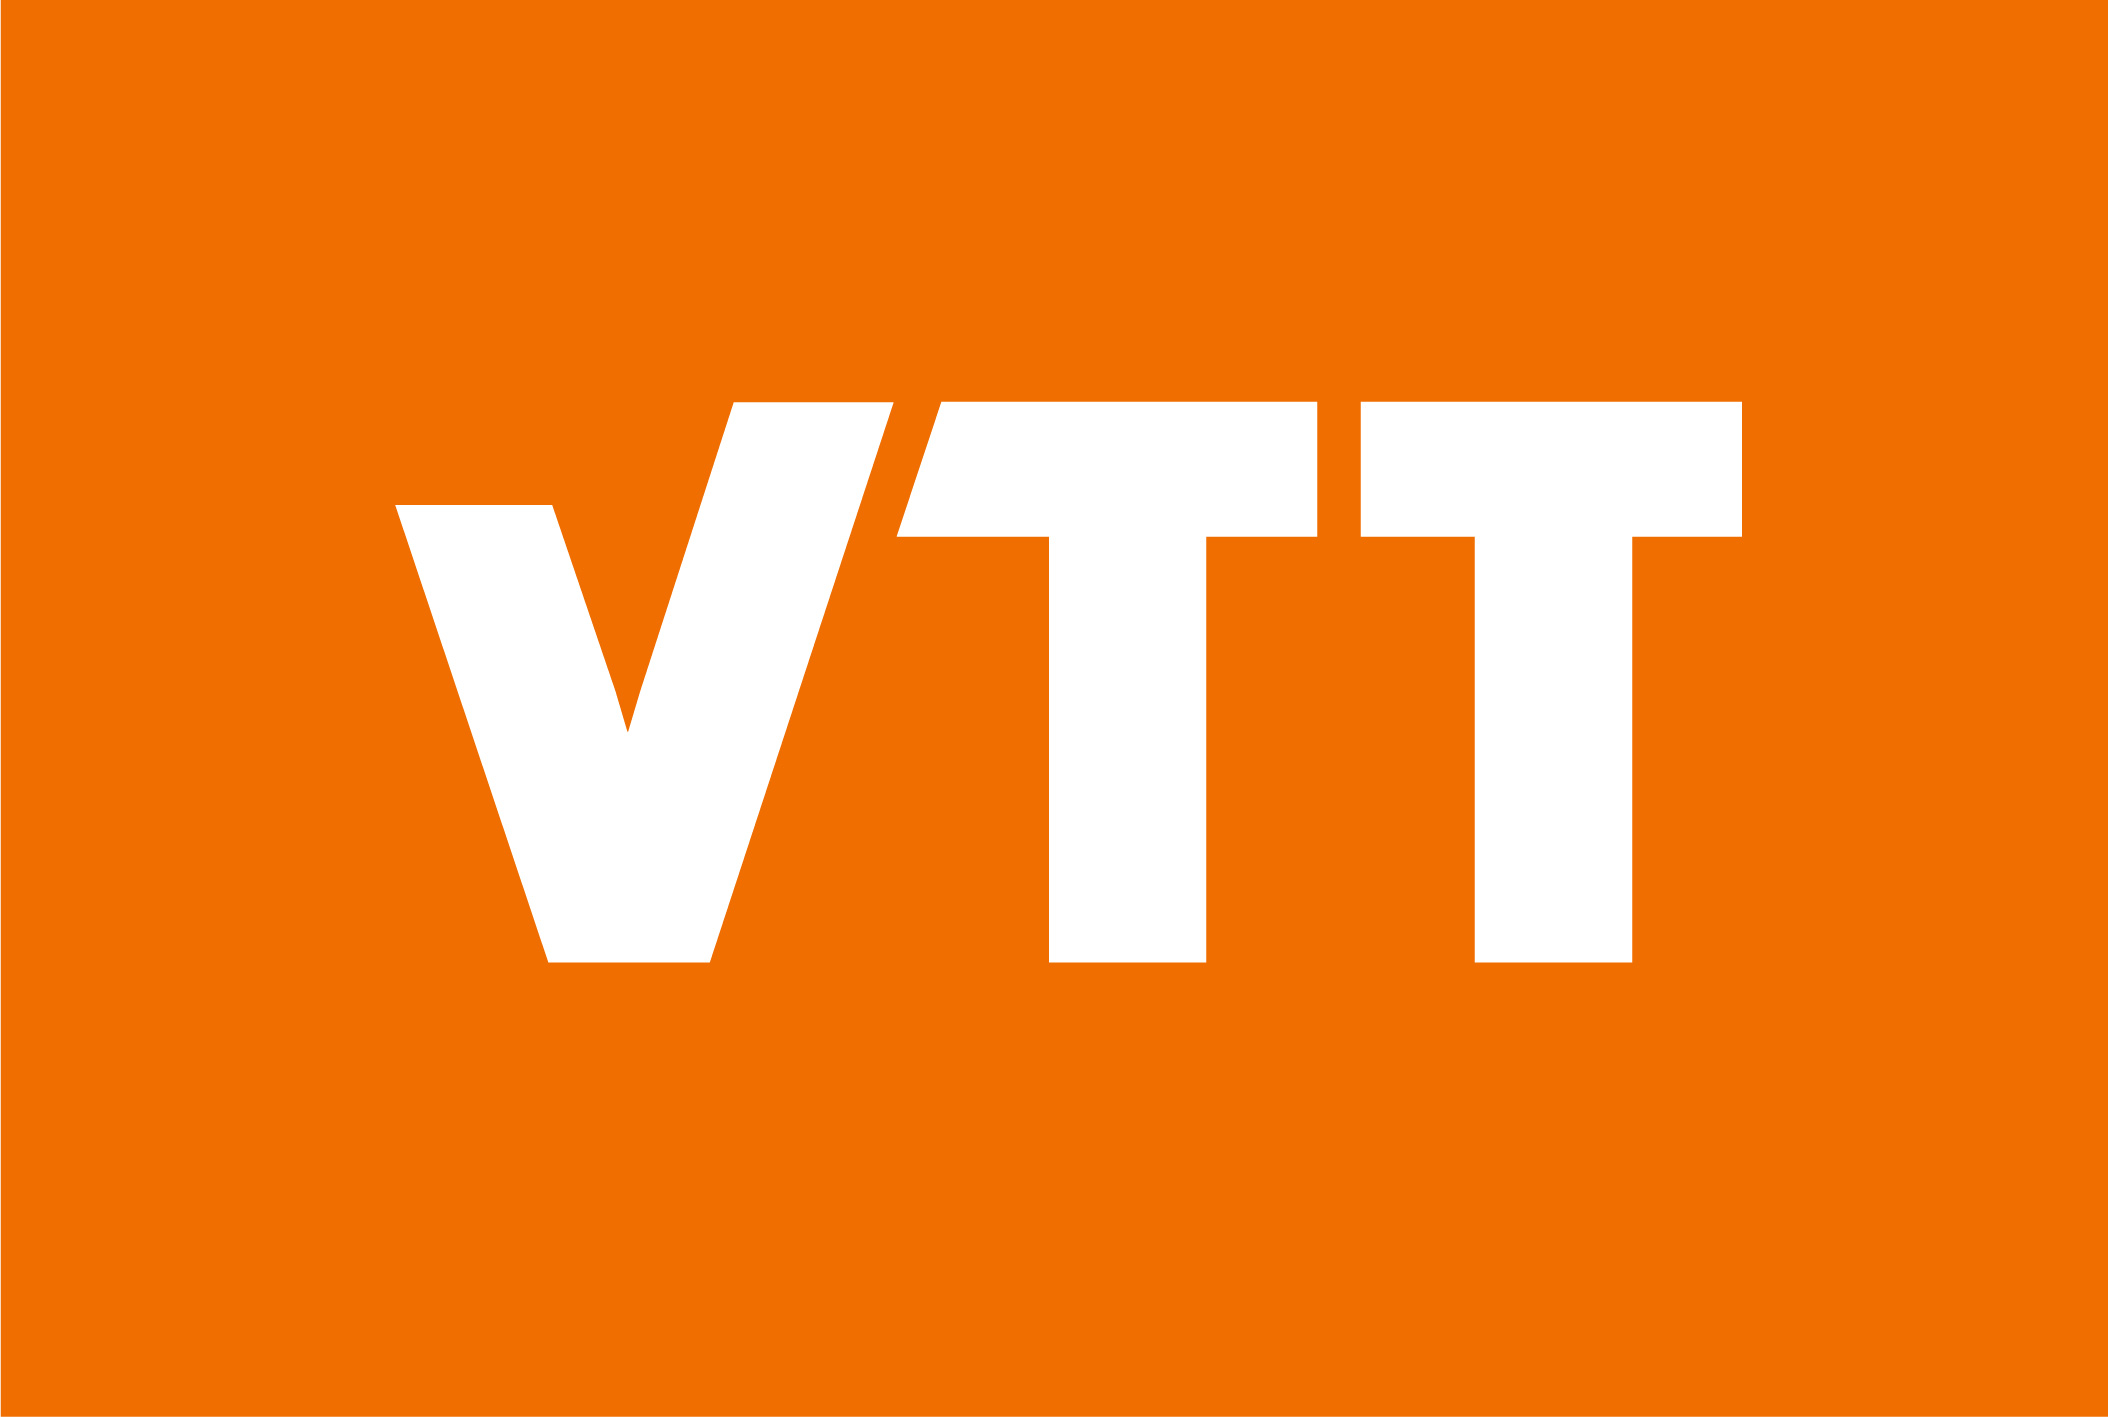 VTT Technical research center of Finland